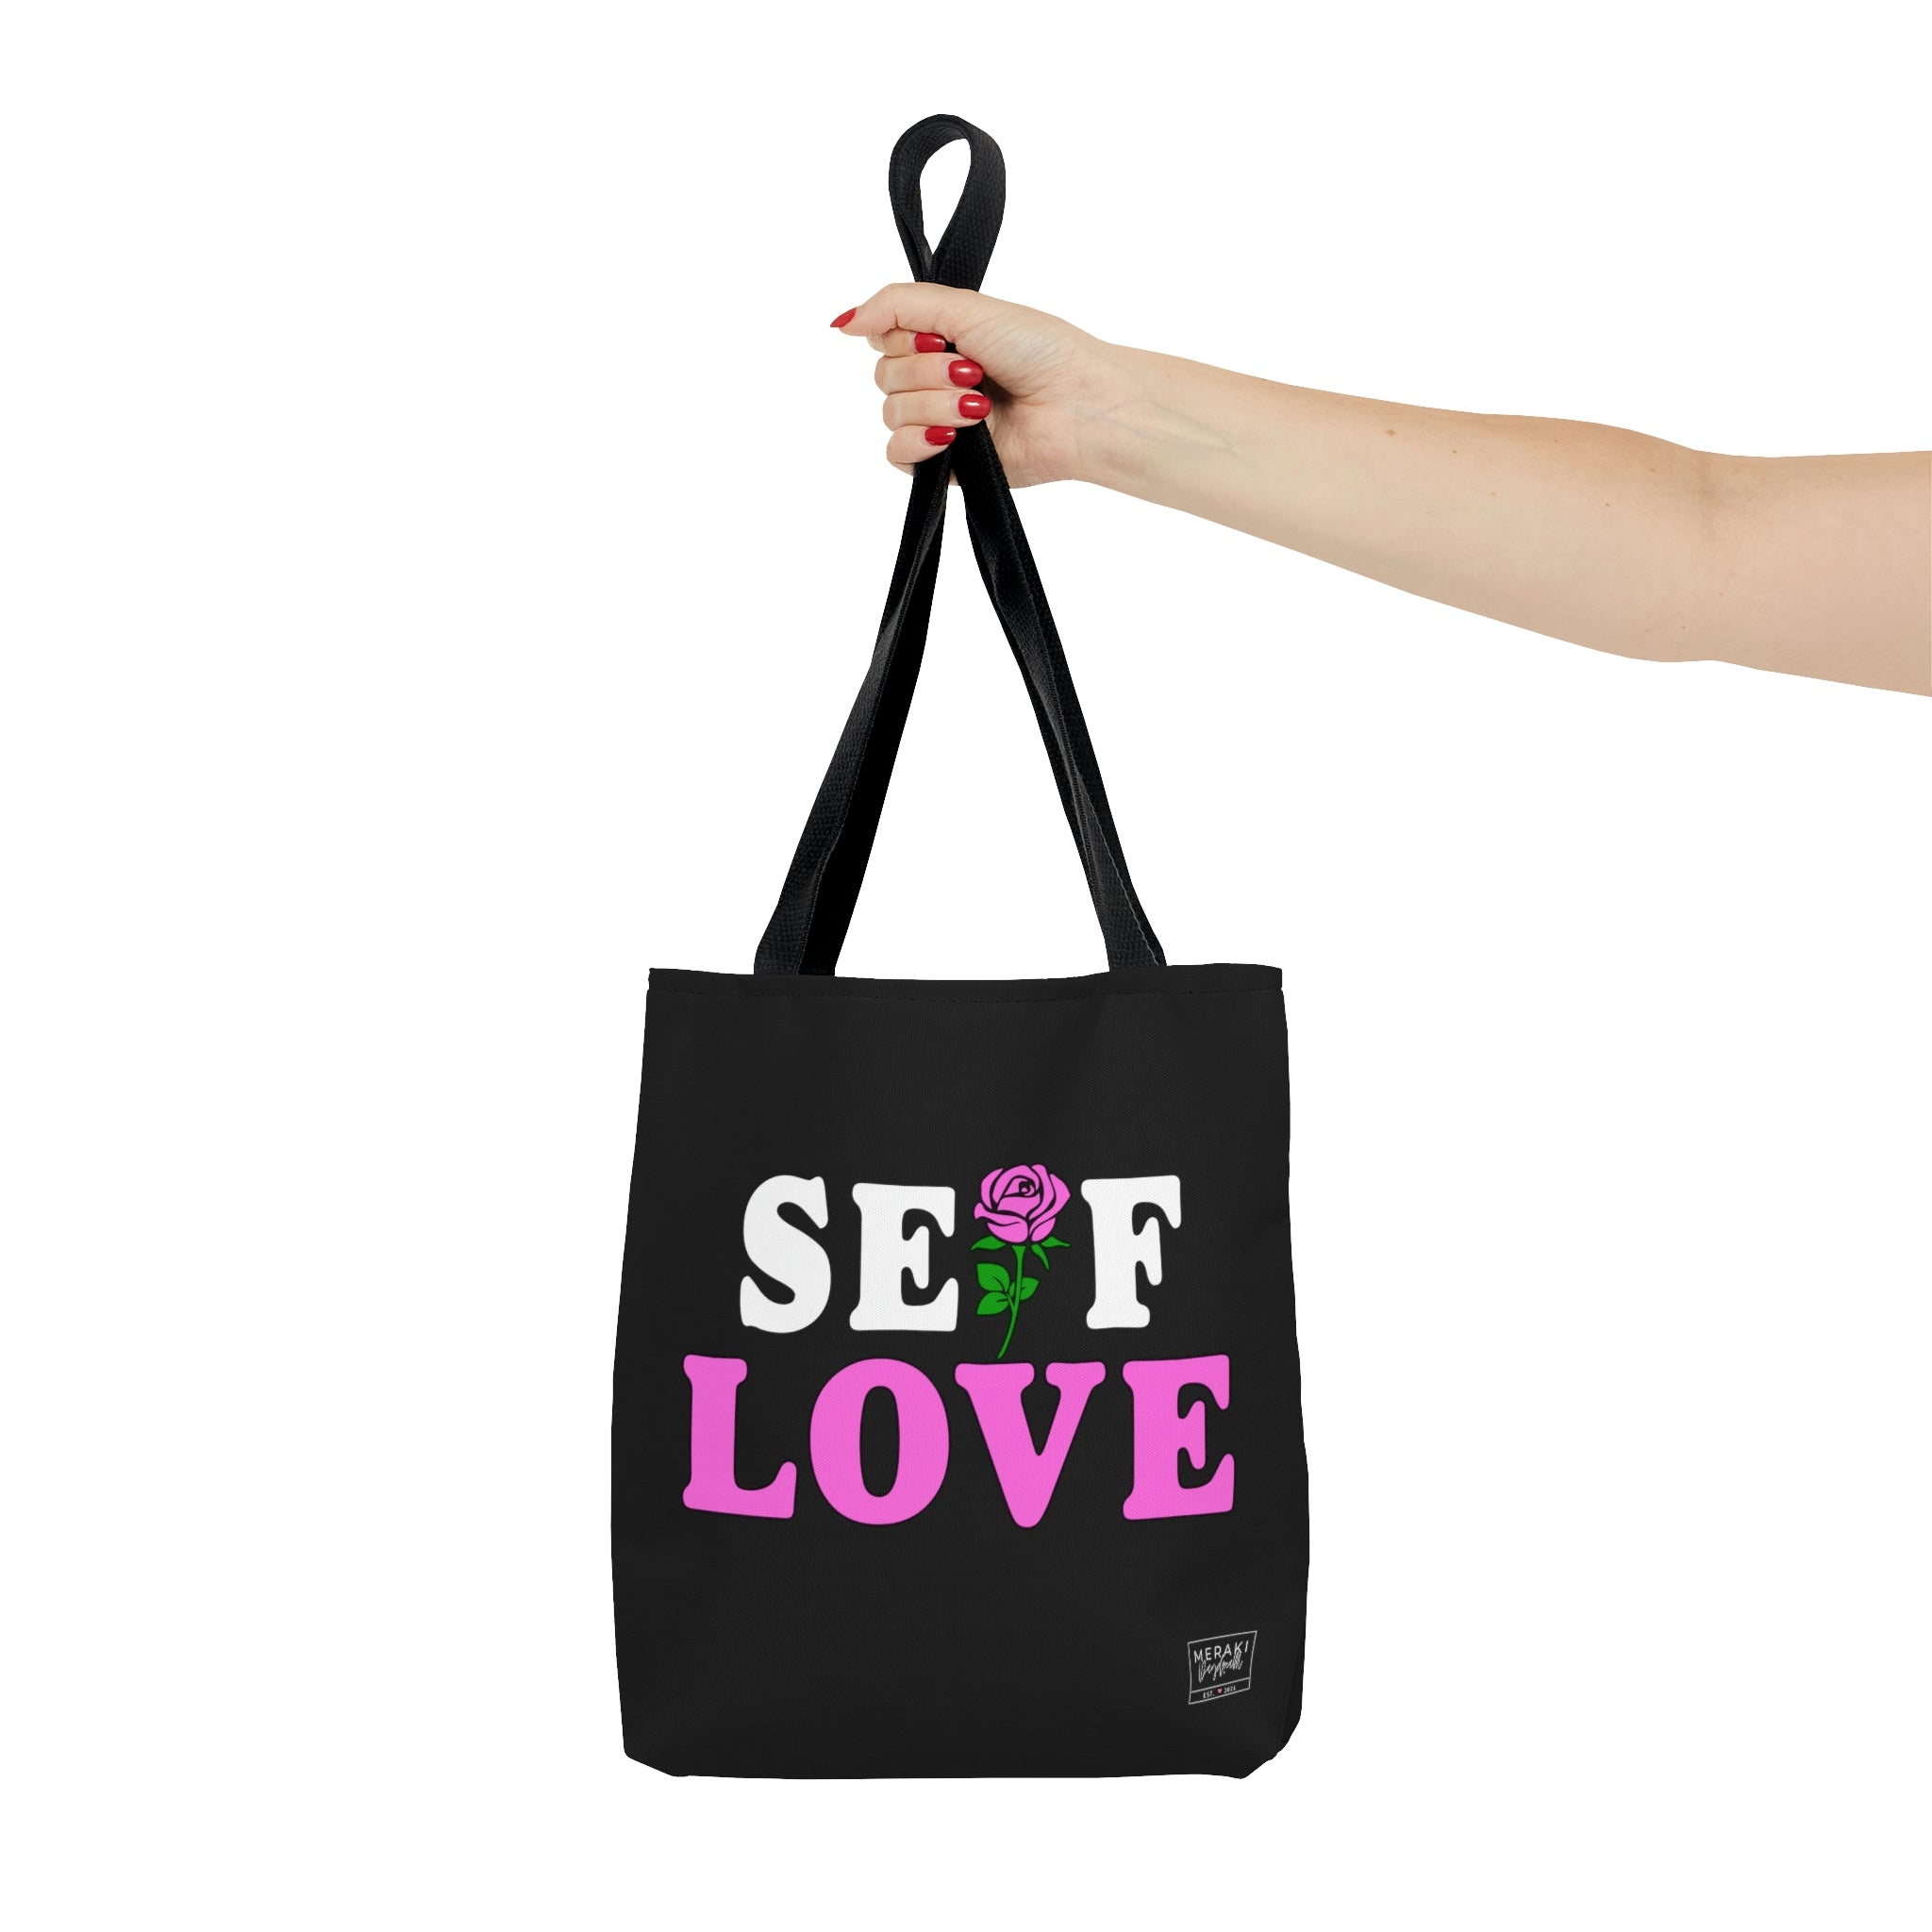 Self Love Tote Bag (Double Sided) - Meraki Daydream